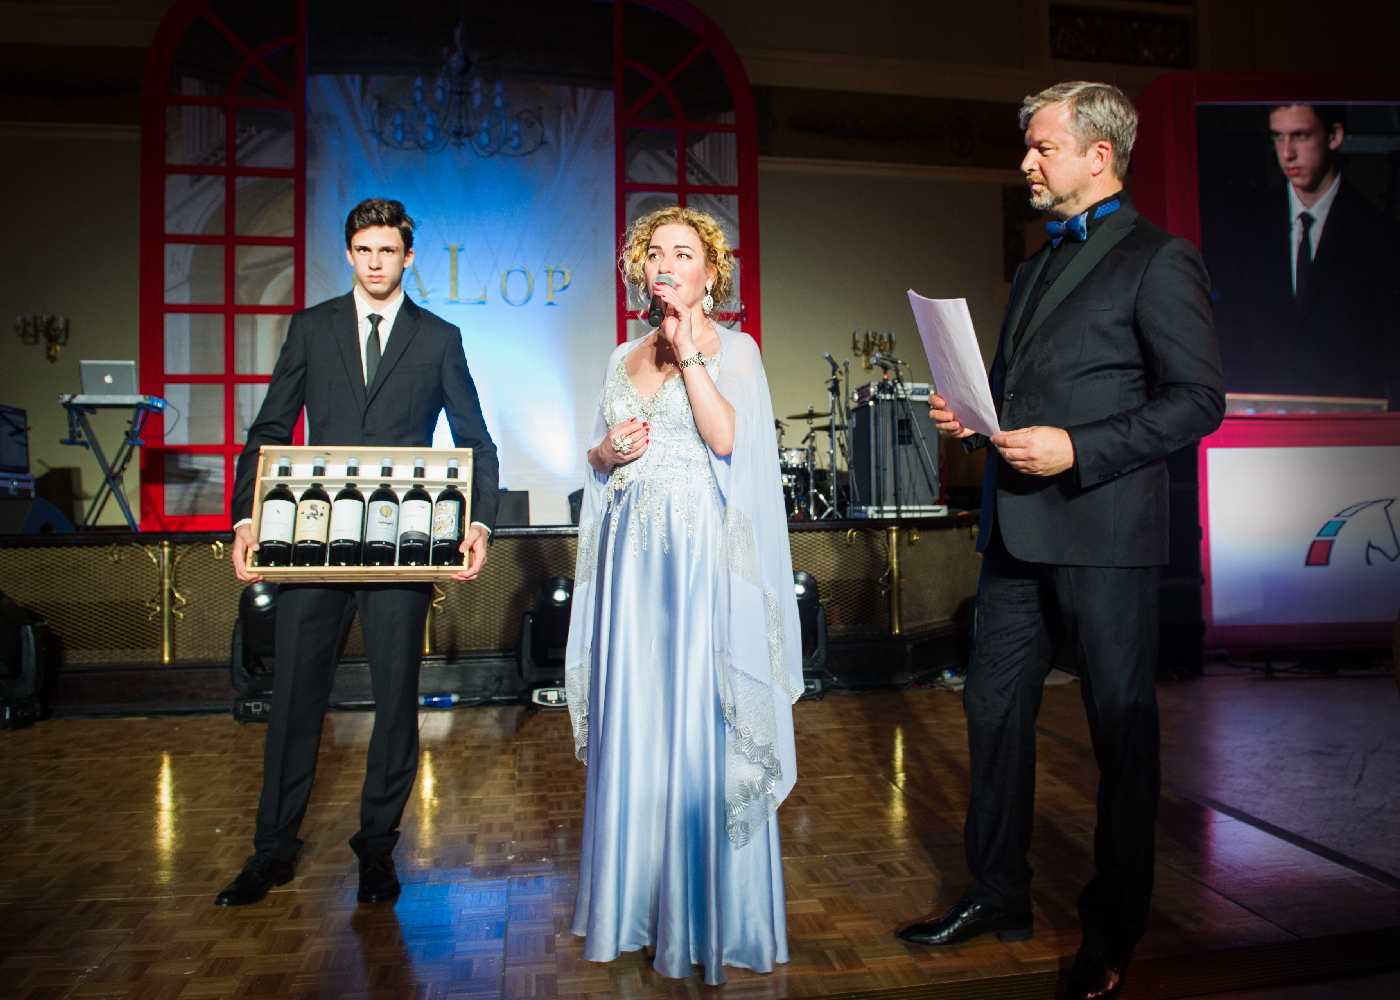 Юлия Валерьевна Евдокимова - основатель и президент группы компаний Palais Royal - лично представила лот на благотворительном аукционе